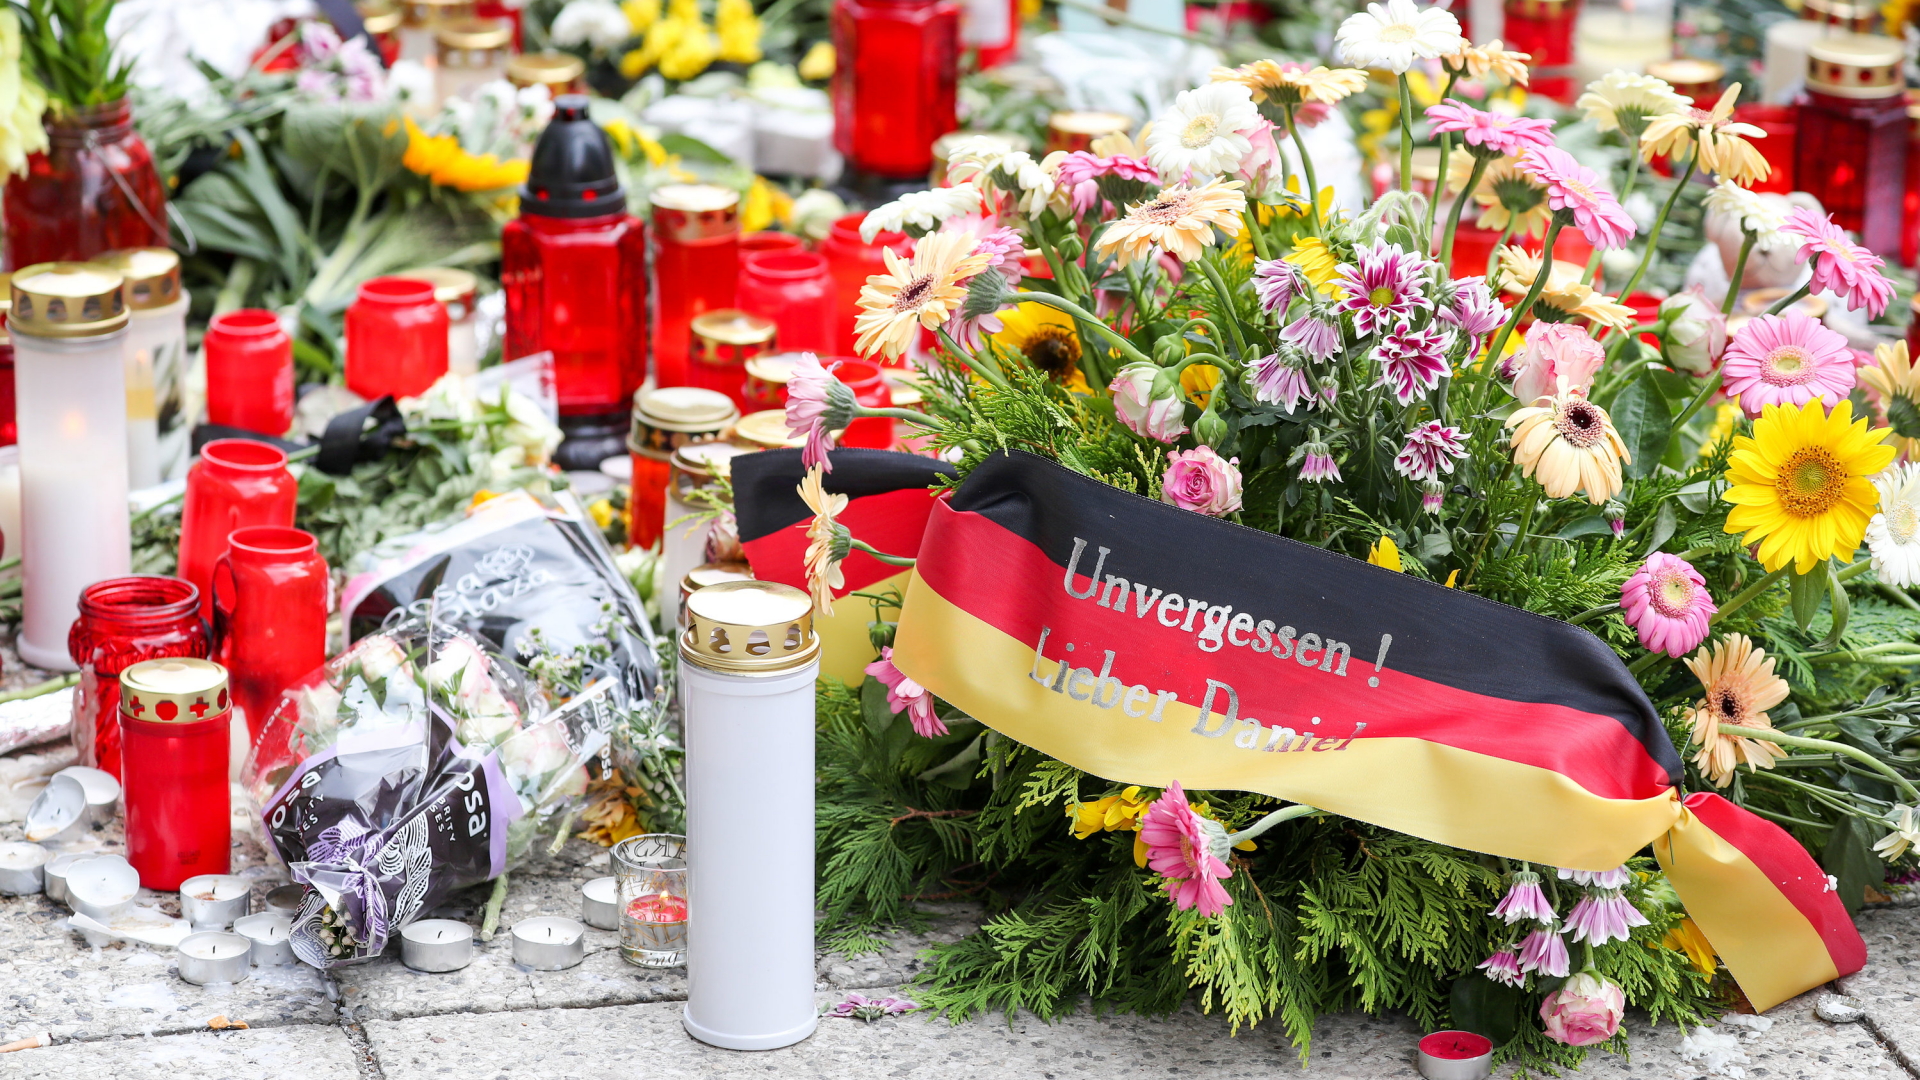 Kerzen und Blumen liegen auf einer Straße in Chemnitz, auf einer schwarz-rot-goldenen Binde steht: "Unvergessen! Lieber Daniel". | dpa